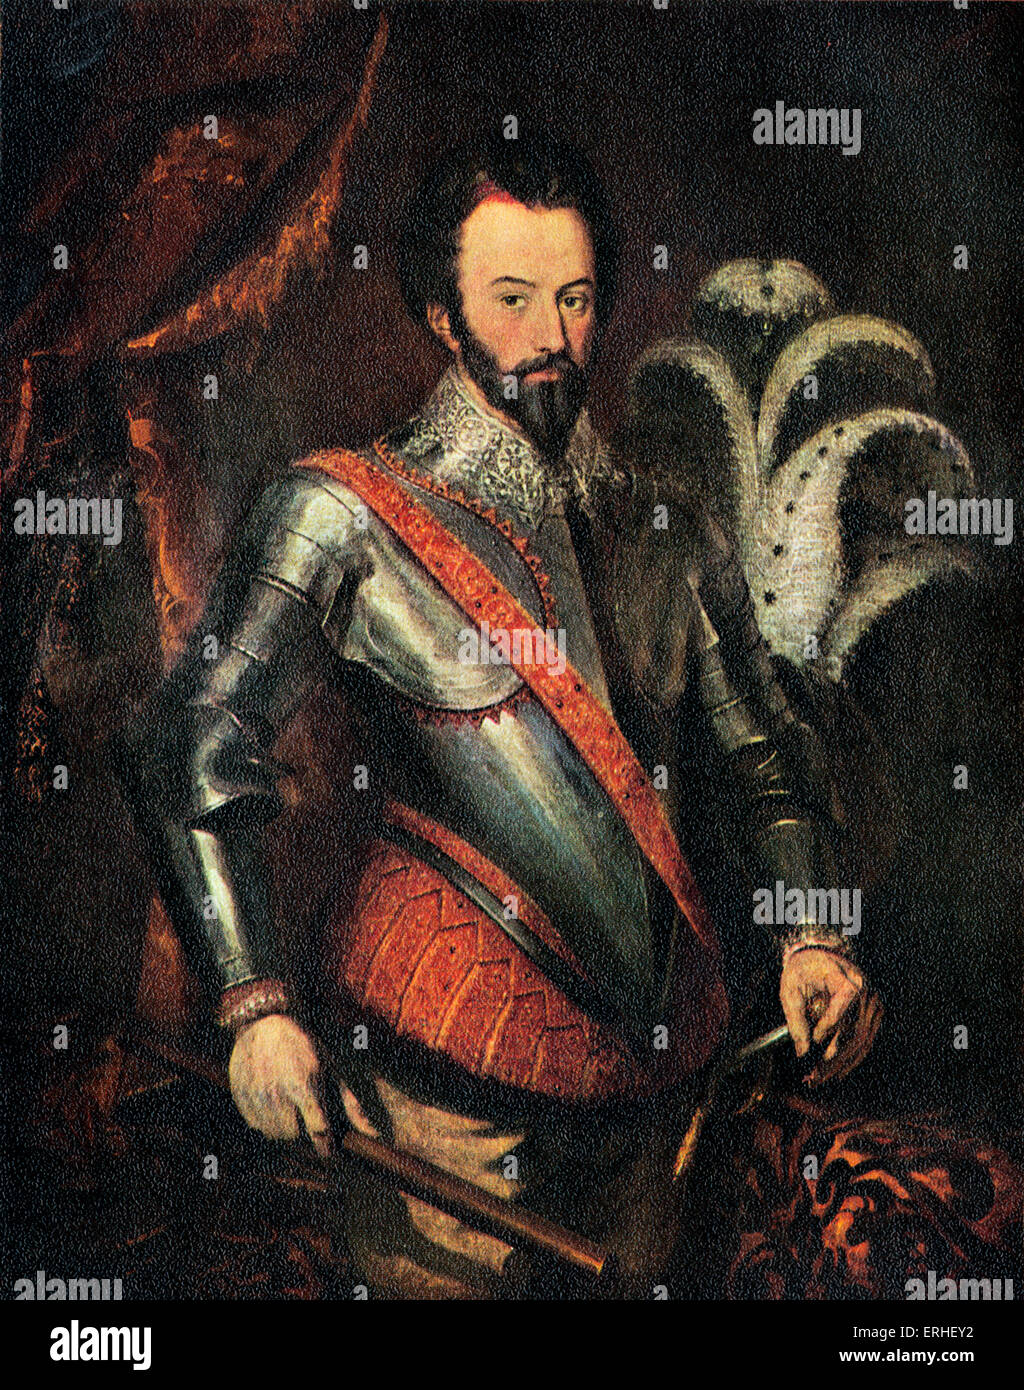 Sir Walter Raleigh - portrait de l'anglais soldat, explorateur, courtisan et écrivain, 1552-1618. Peinture à l'huile par Hubert L. Smith, Oriel College, Oxford. La liaison avec Elizabeth I Banque D'Images